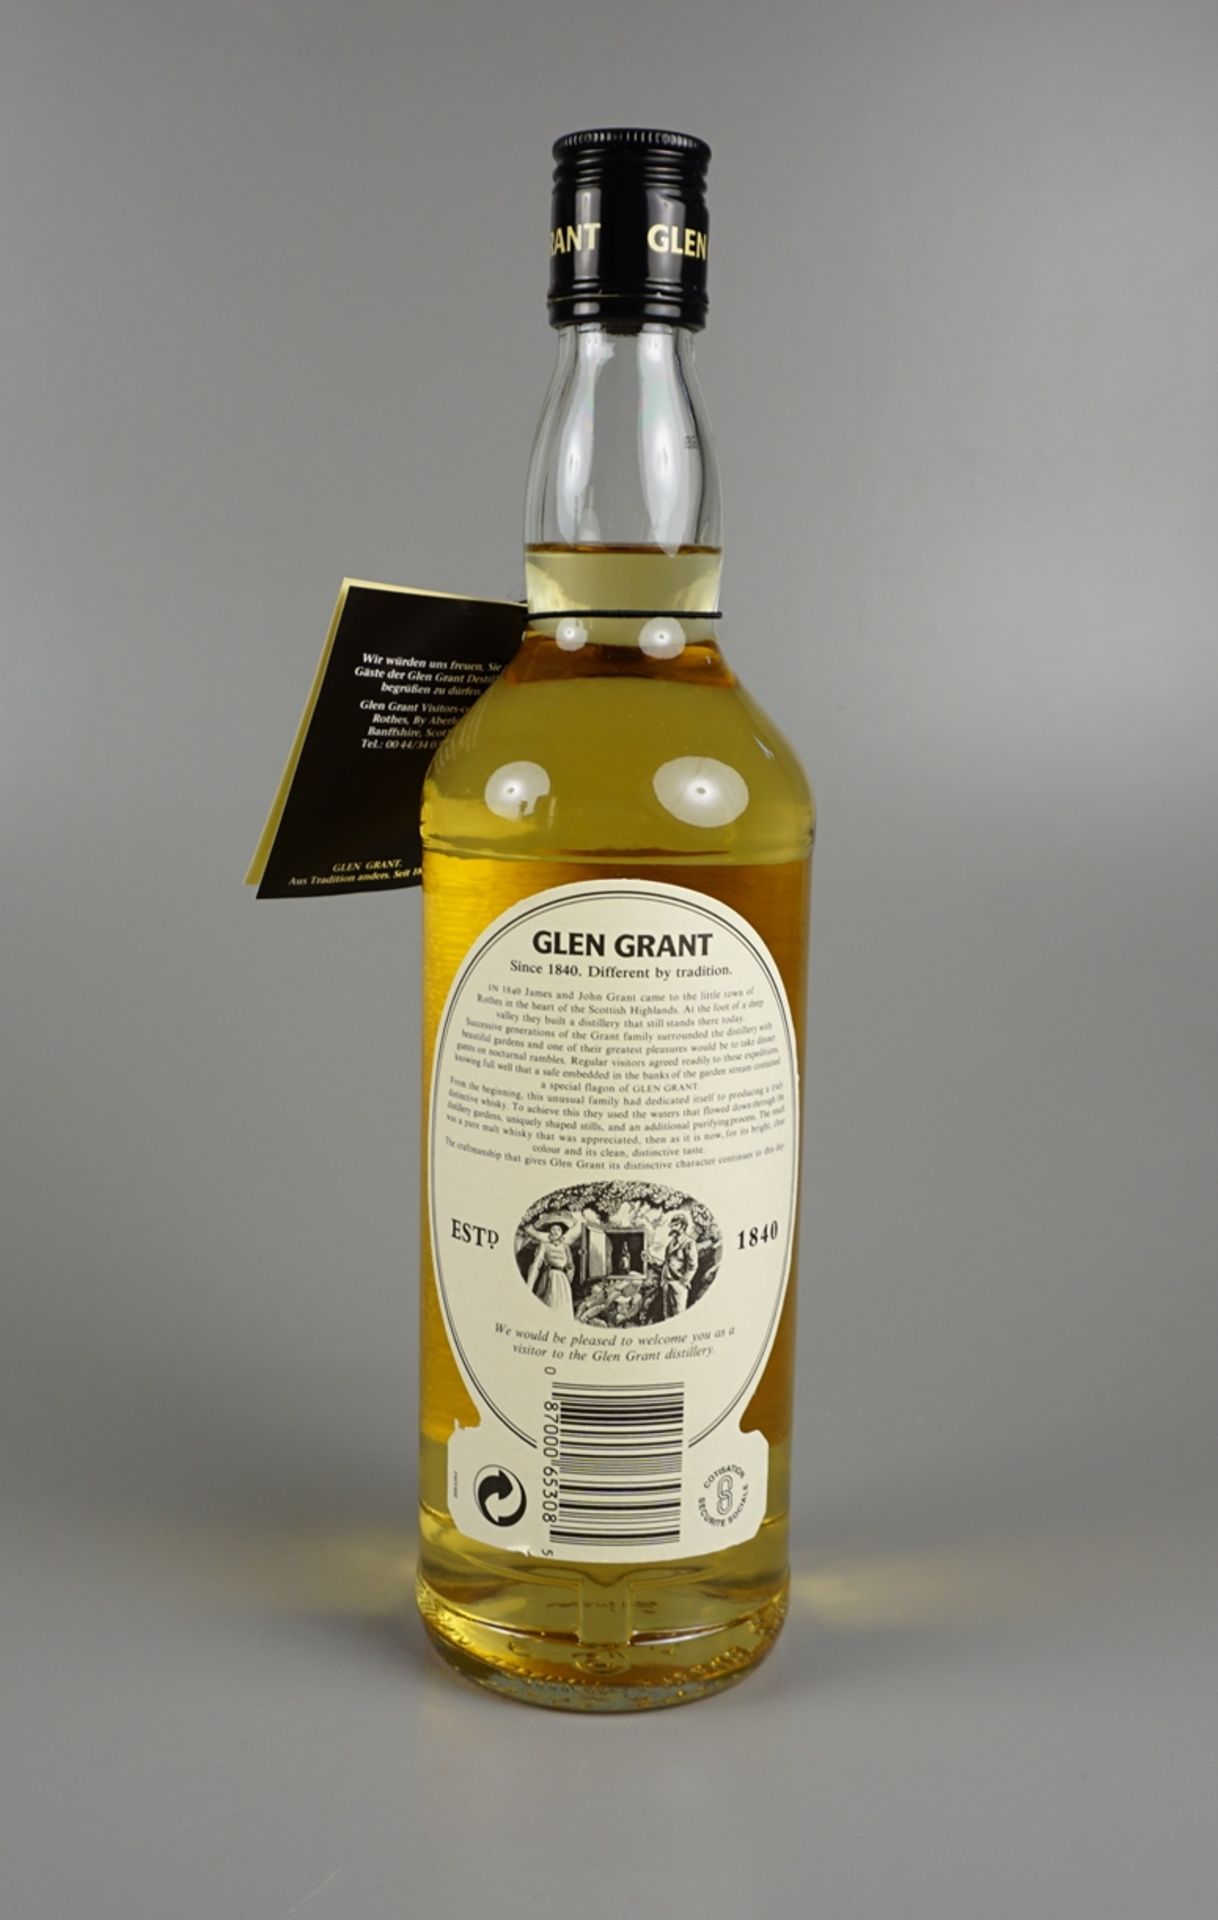 Glen Grant Pure Malt Scotch Whisky, Highland, Schottland, mit exklusiver Metallbox - Bild 2 aus 2